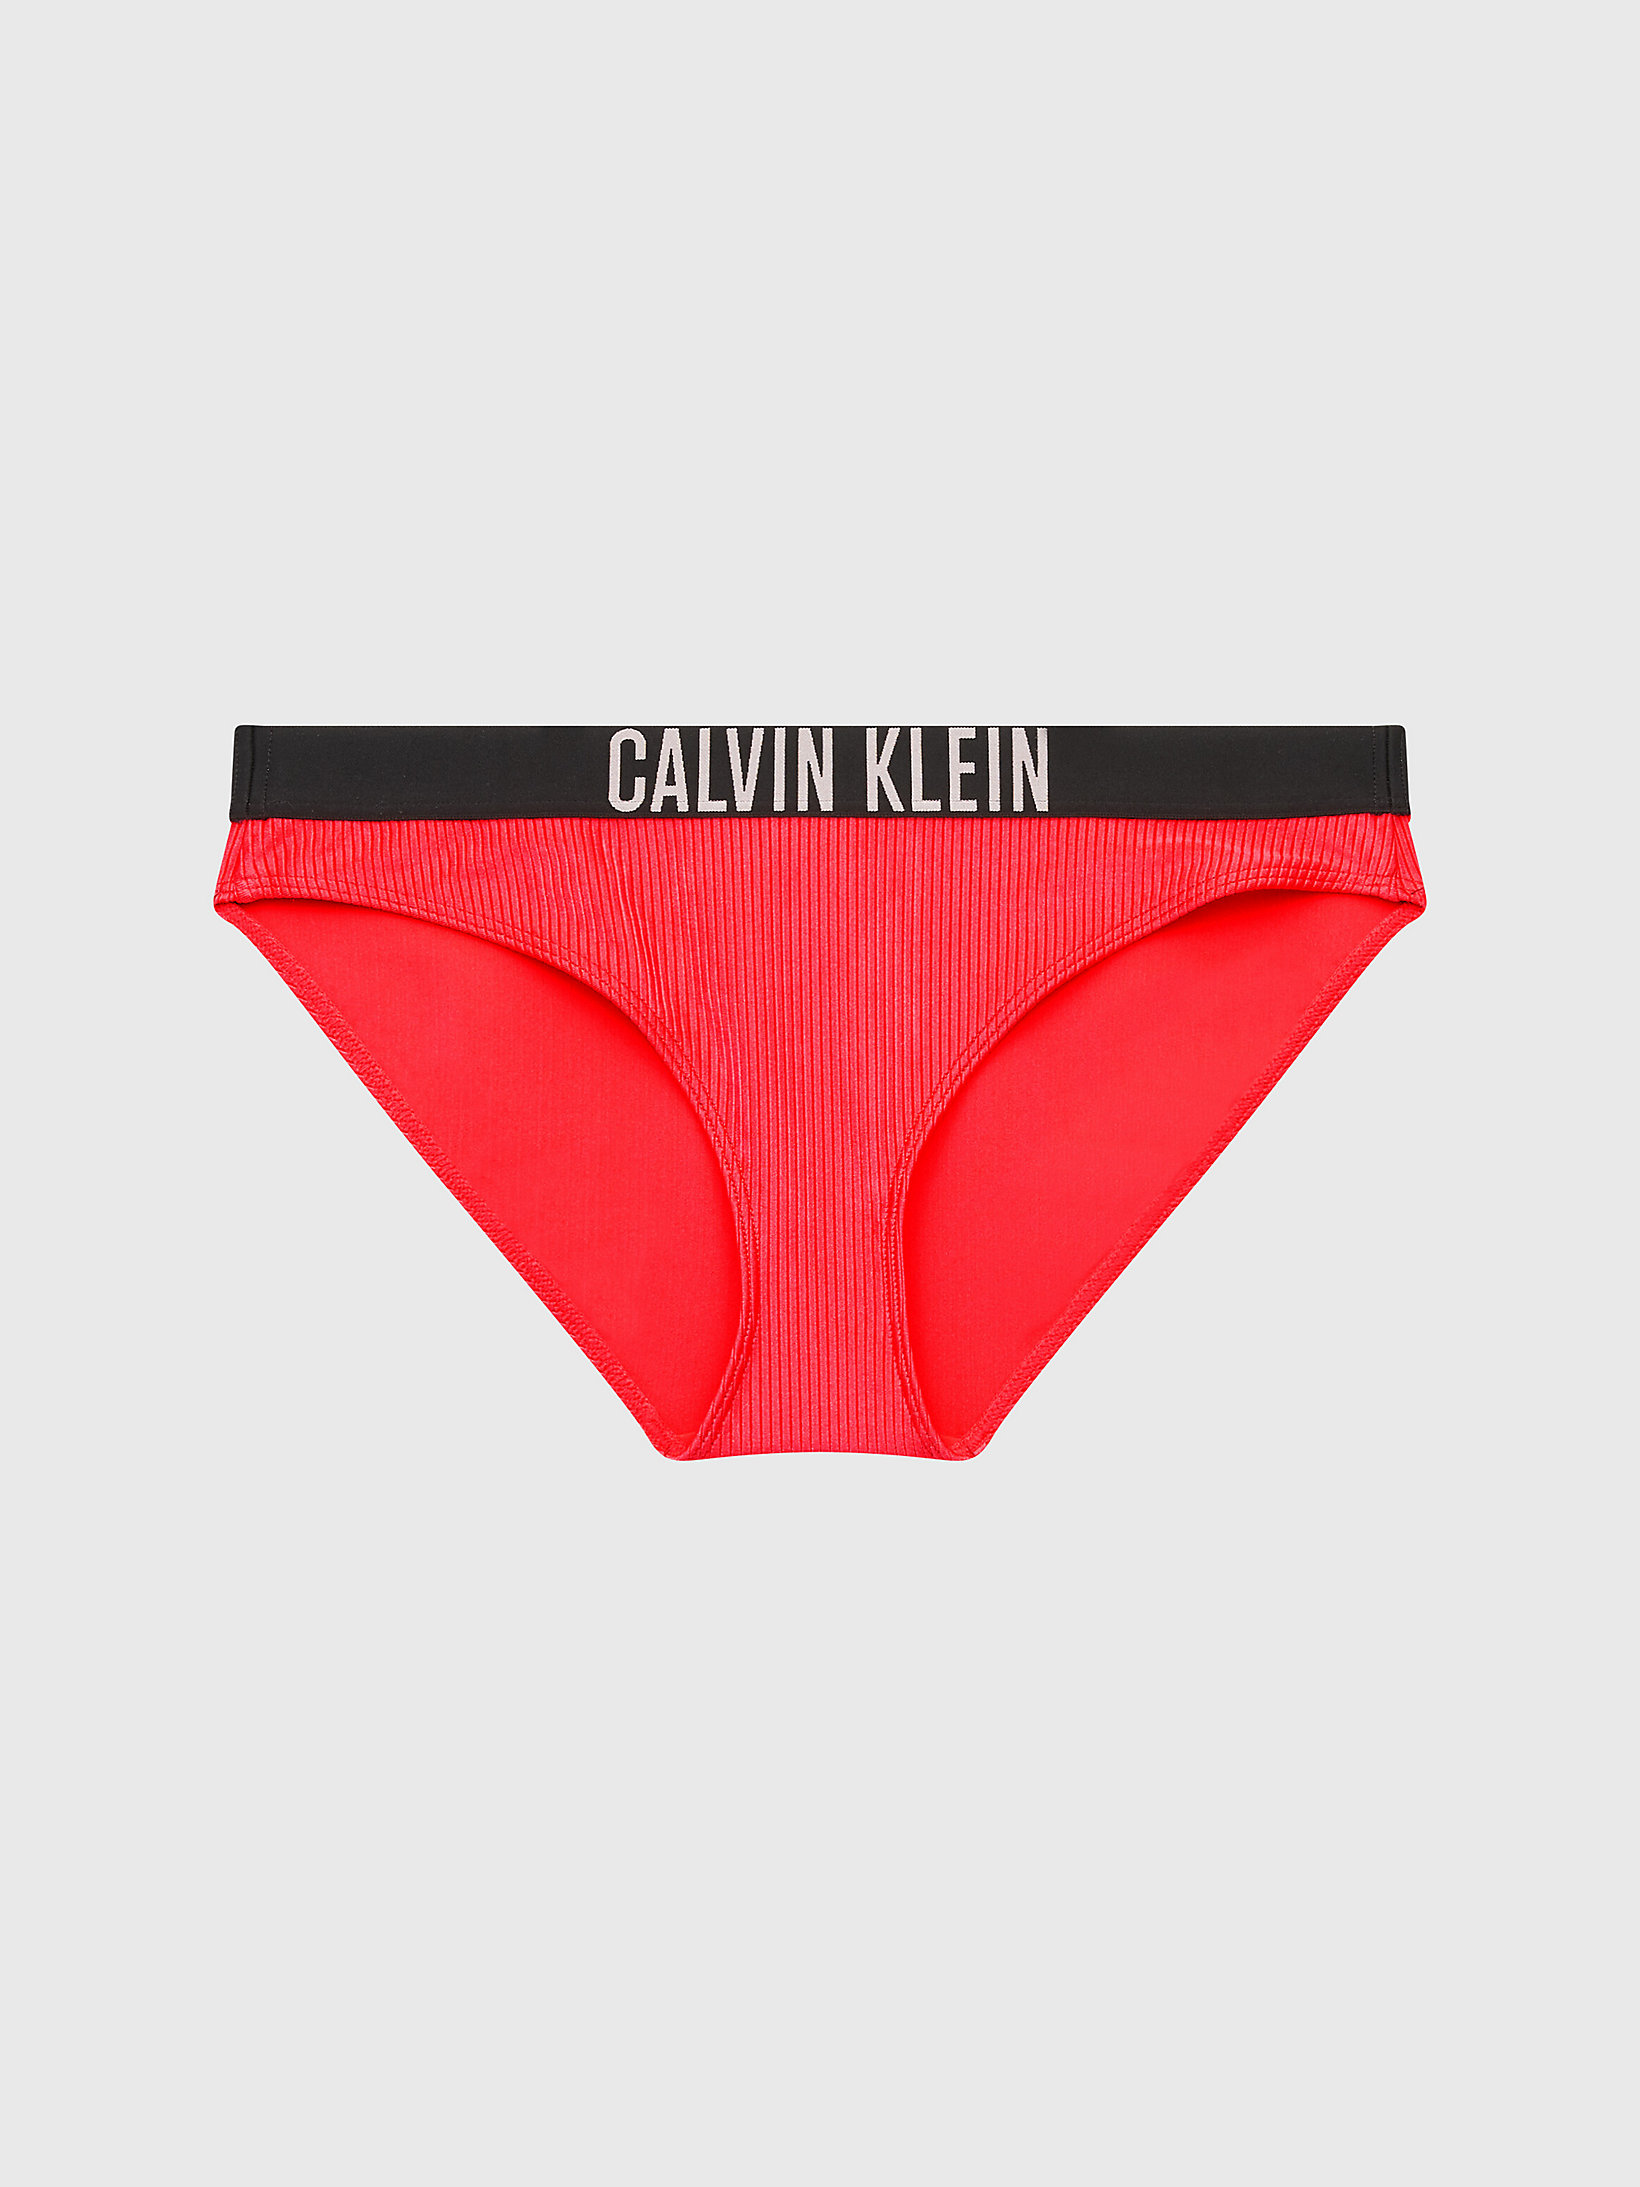 Slip Bikini - Intense Power > Coral Crush > undefined donna > Calvin Klein